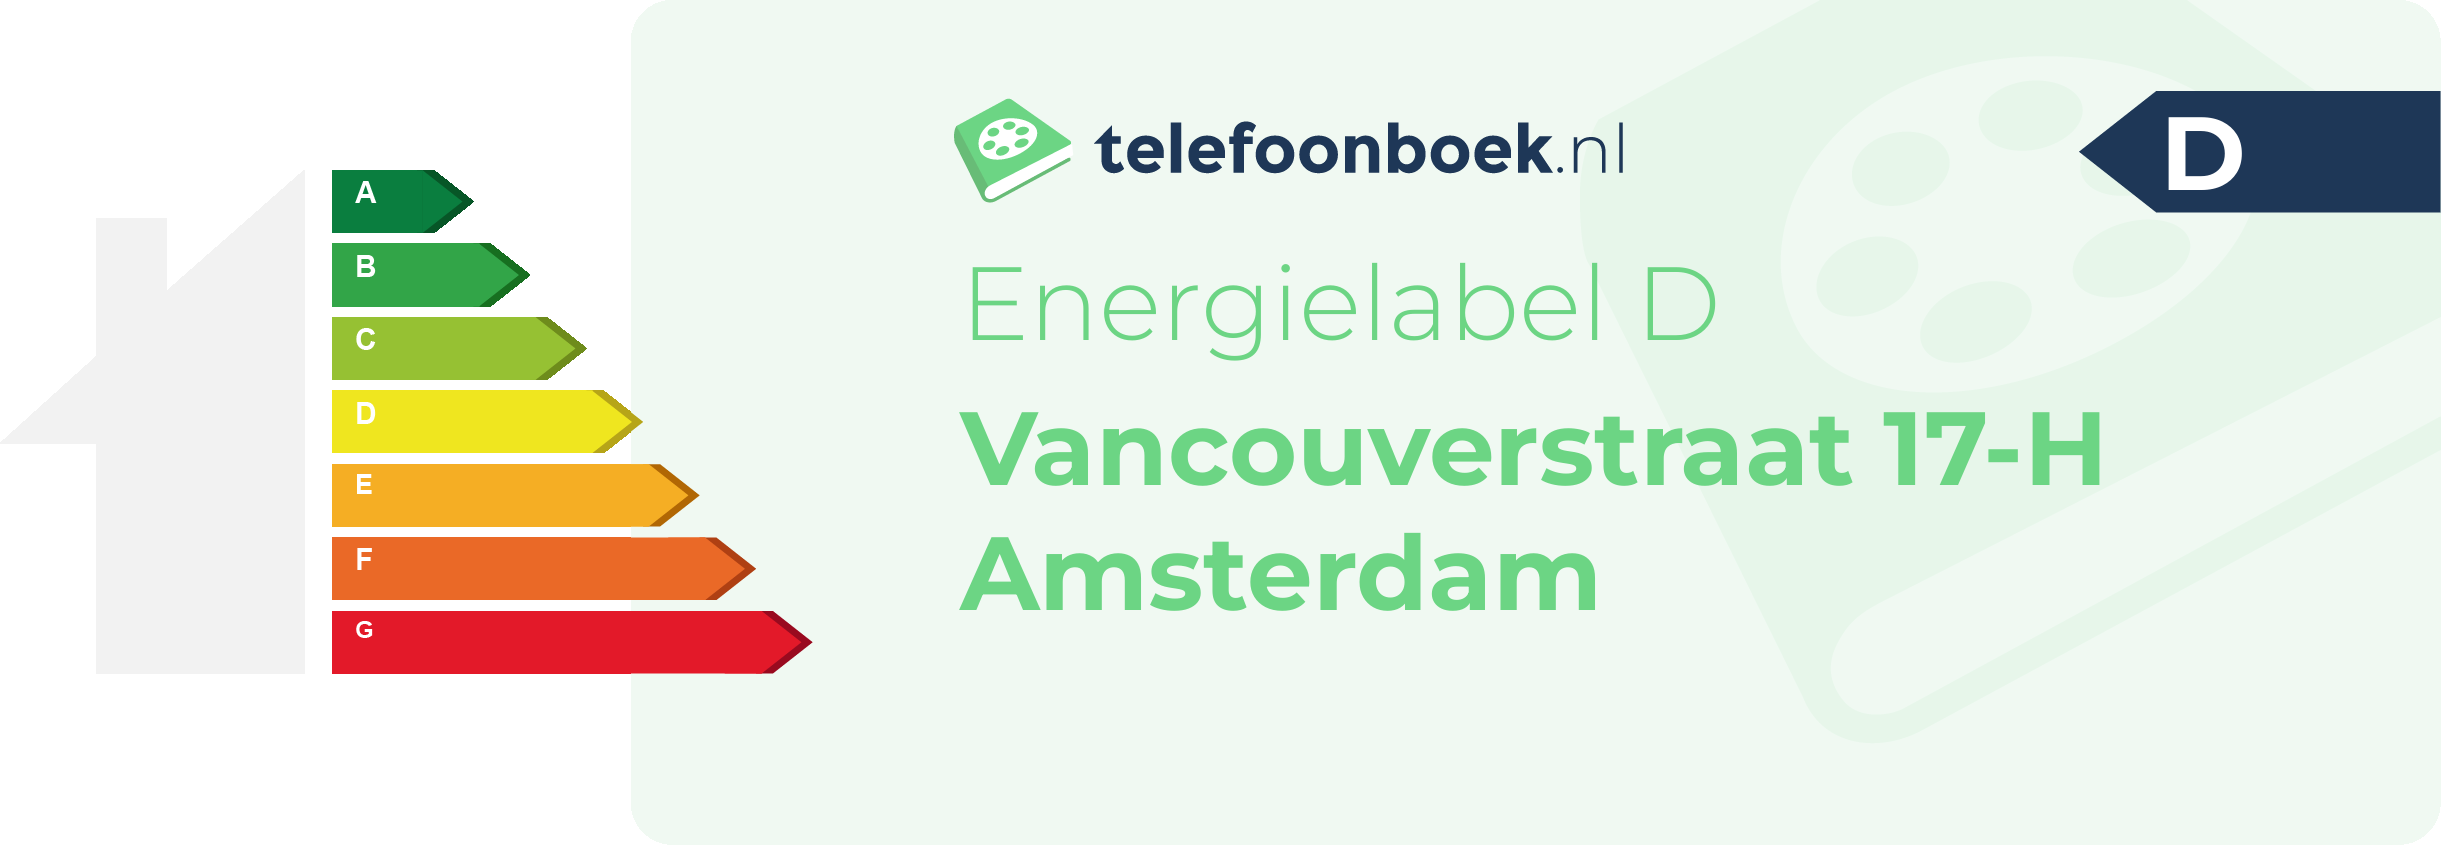 Energielabel Vancouverstraat 17-H Amsterdam